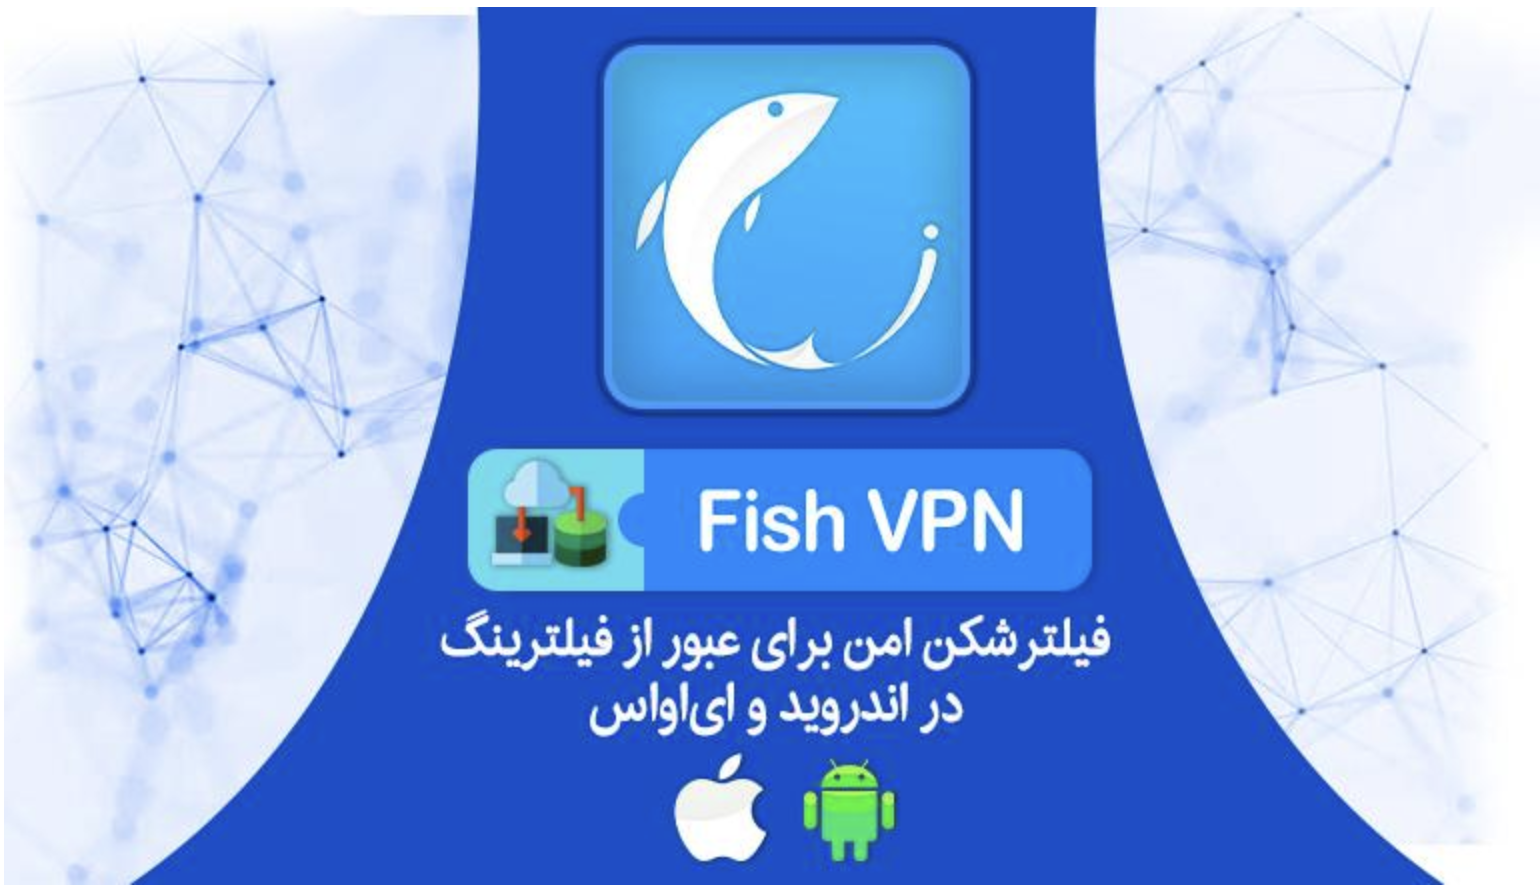 Fish VPN